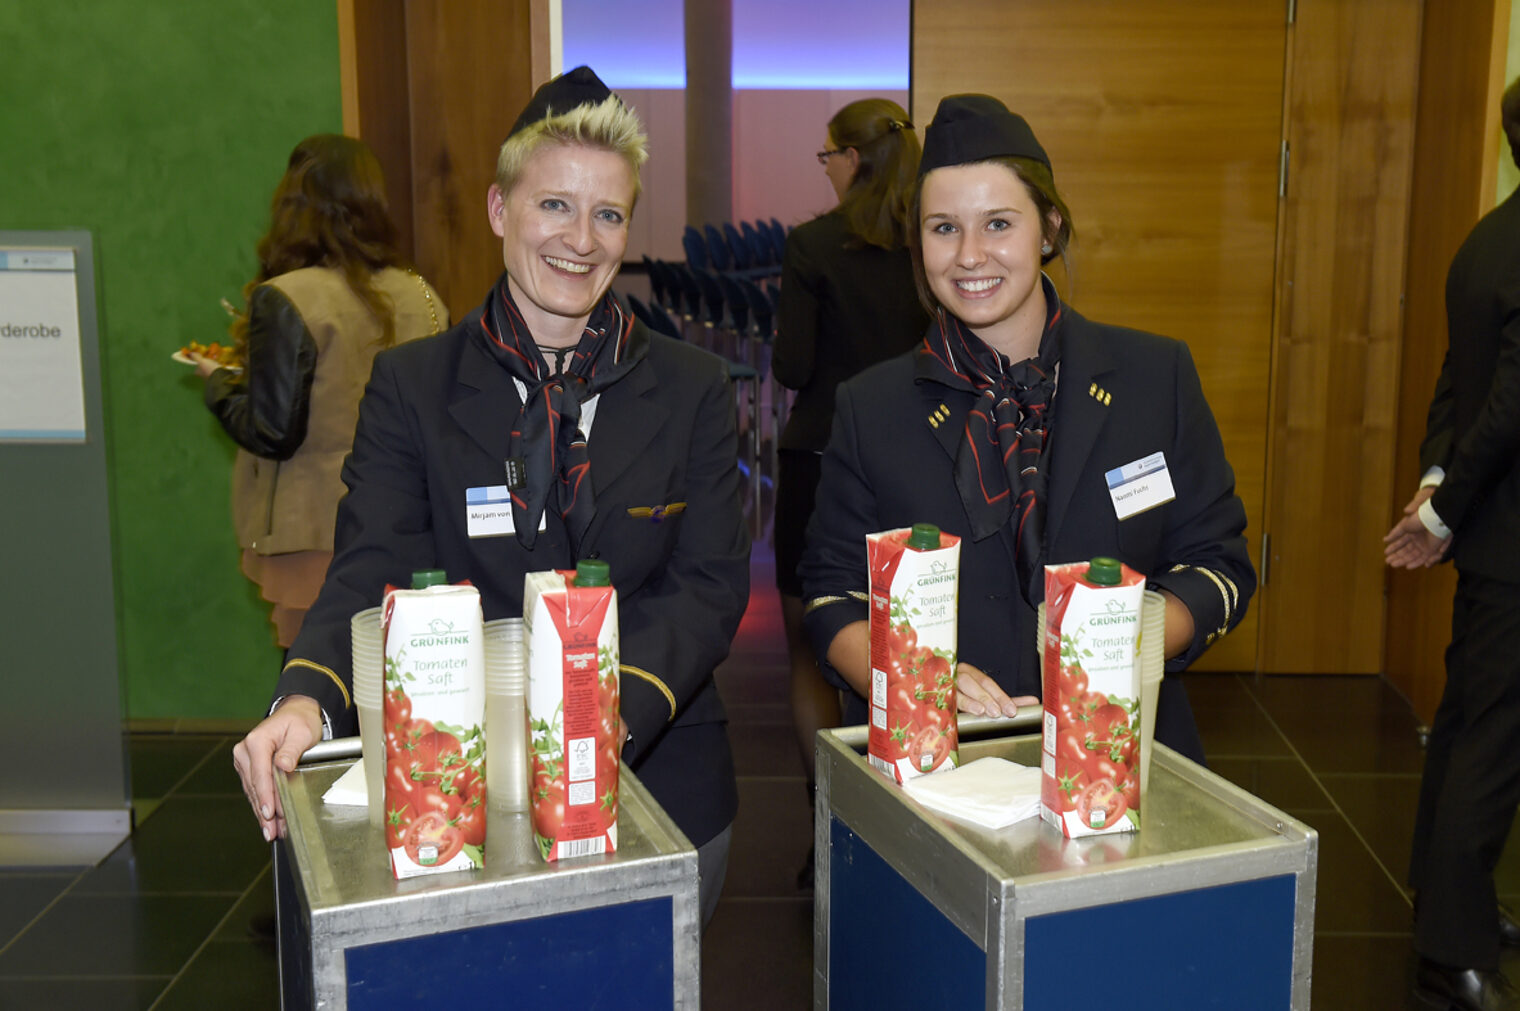 PLW 2015: Nach der Preisverleihung servierten zwei freundliche Flugbegleiterinnen den Gästen Tomatensaft.